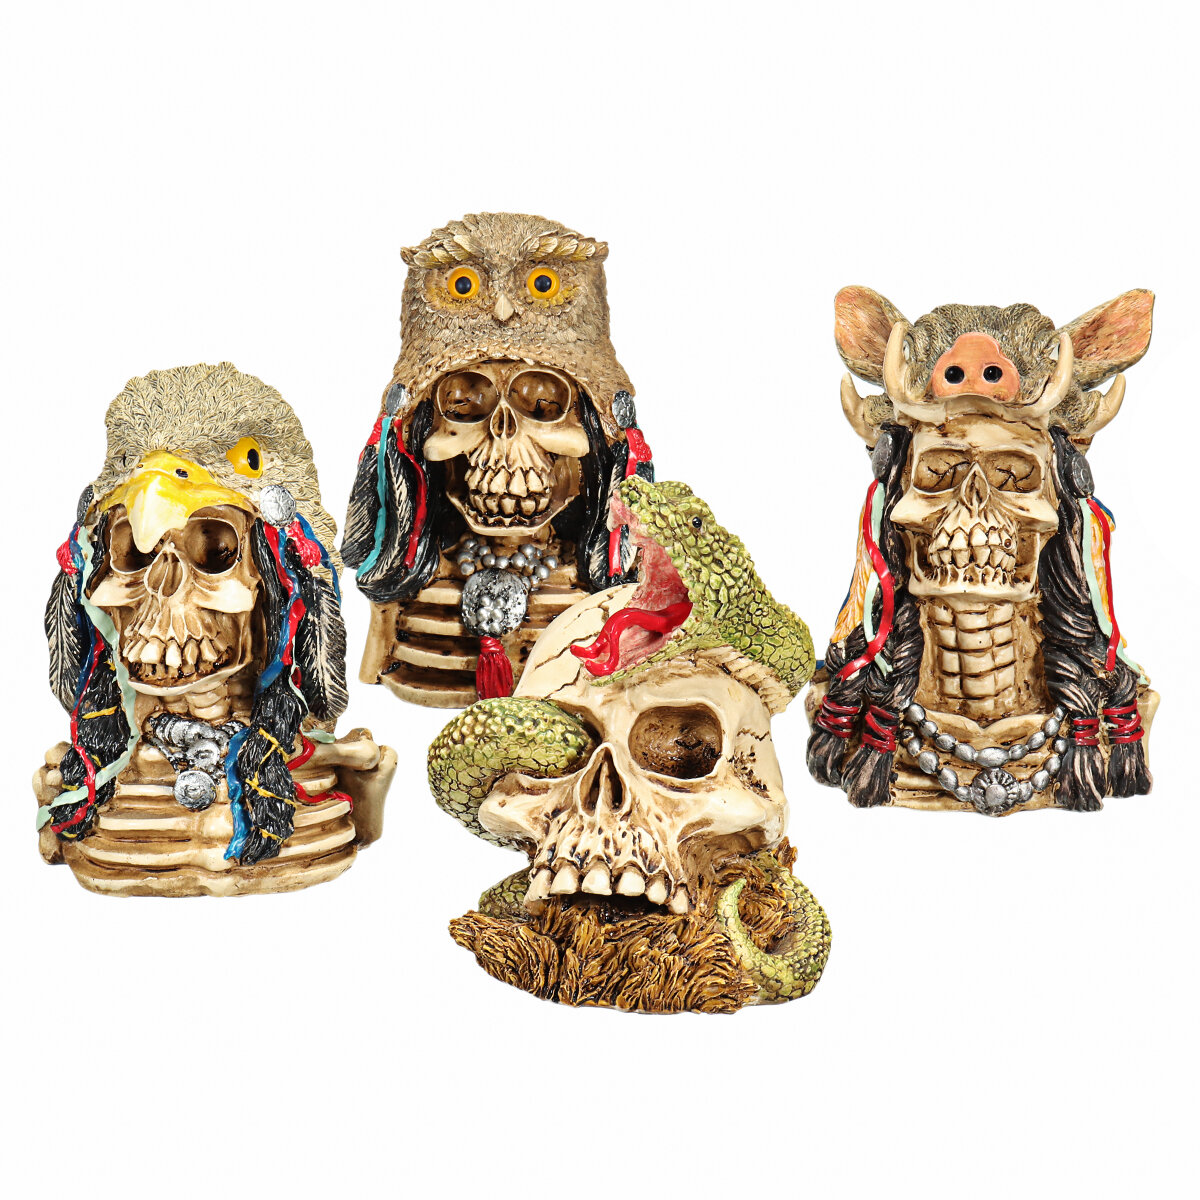 Halloween Skull Ornament Resin Skull Head Skeleton Crafts Statue Desktop Decorations